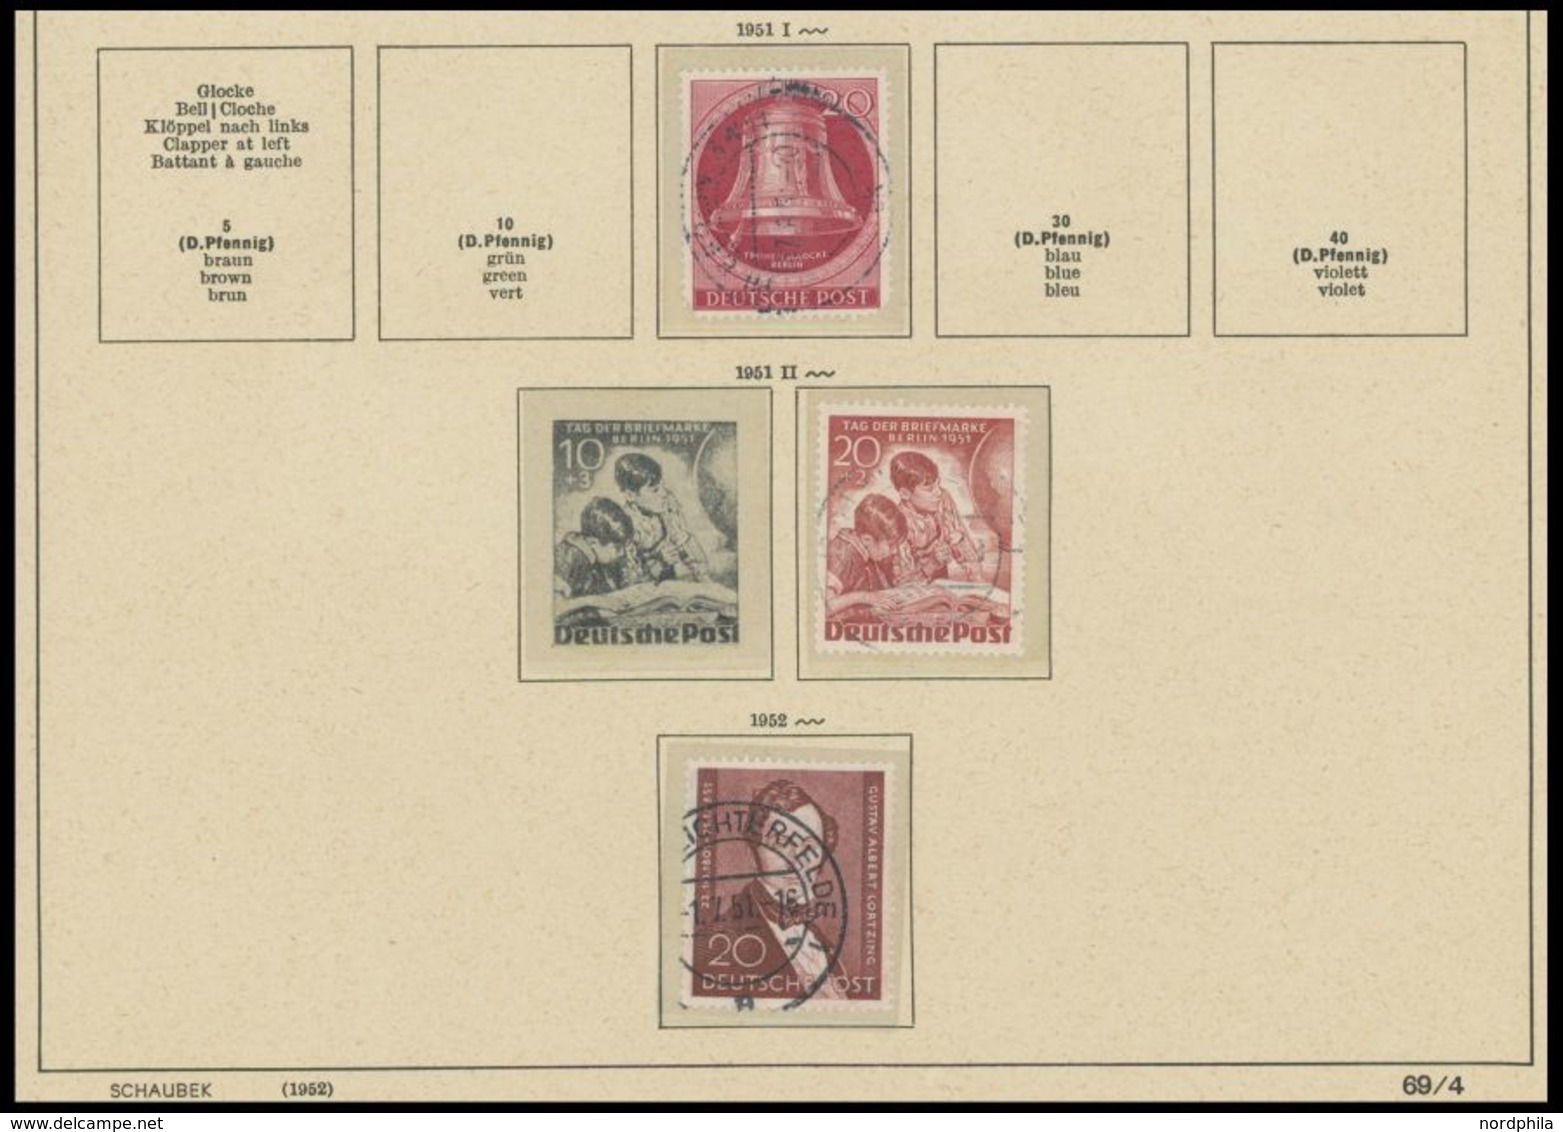 Kleiner Karton, Dabei Restsammlung Berlin Von 1948-67, Ca. 60 Belege Aus 1950-80, Dazu 2 BEPHILA Entwürfe Von 1957, Etwa - Used Stamps